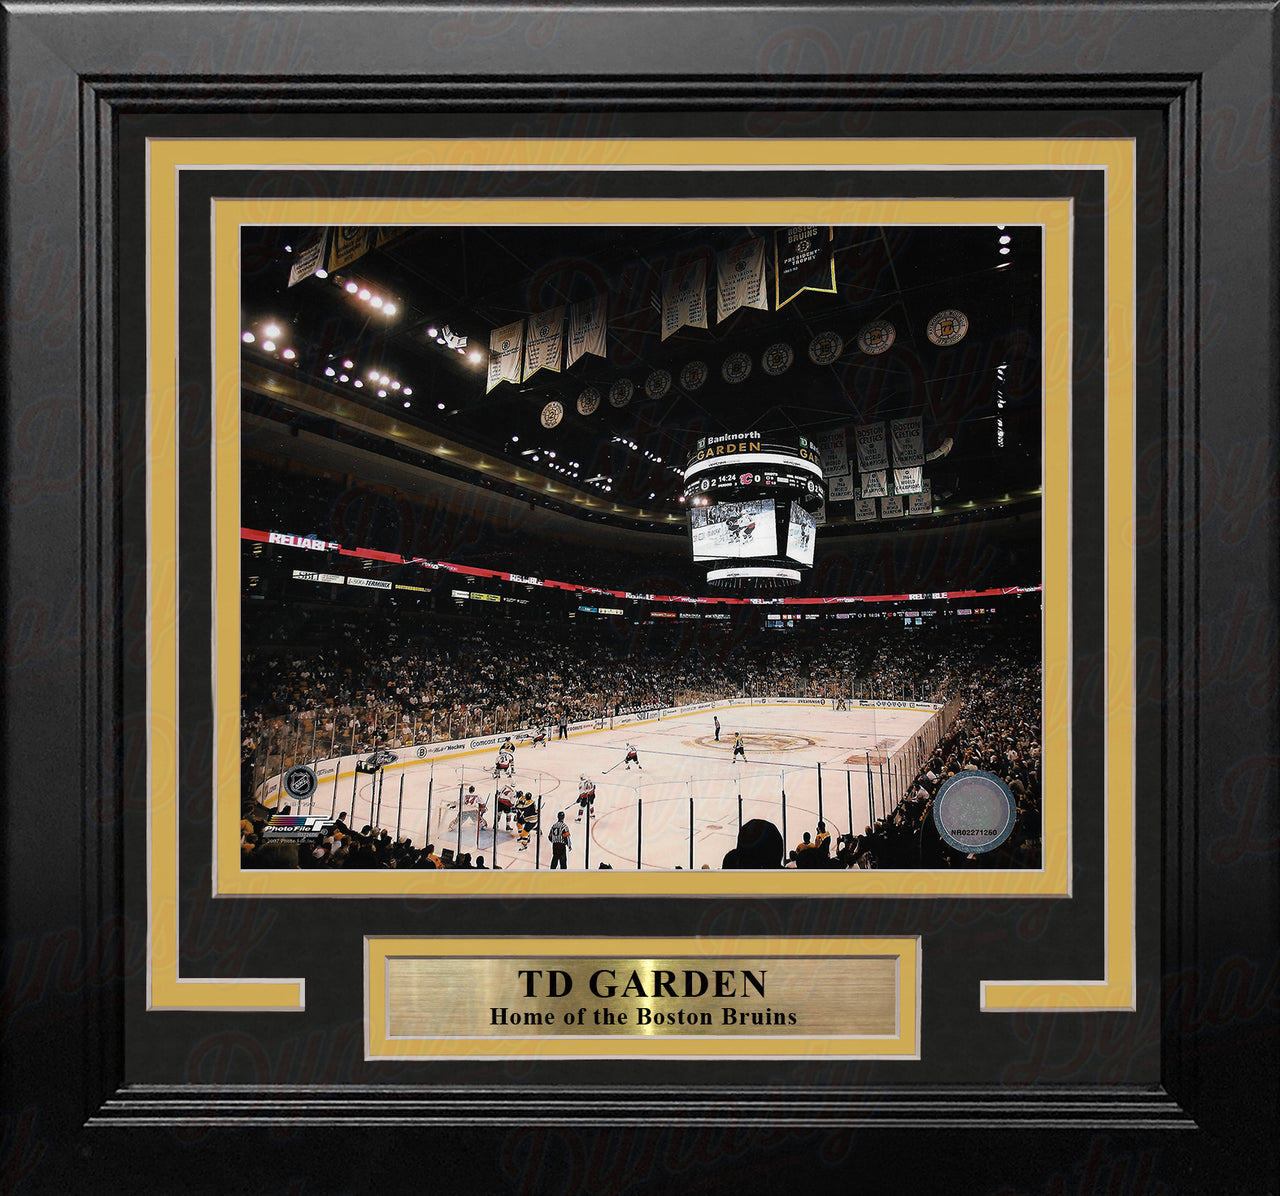 Boston Bruins TD Garden 8" x 10" Framed Hockey Stadium Photo - Dynasty Sports & Framing 